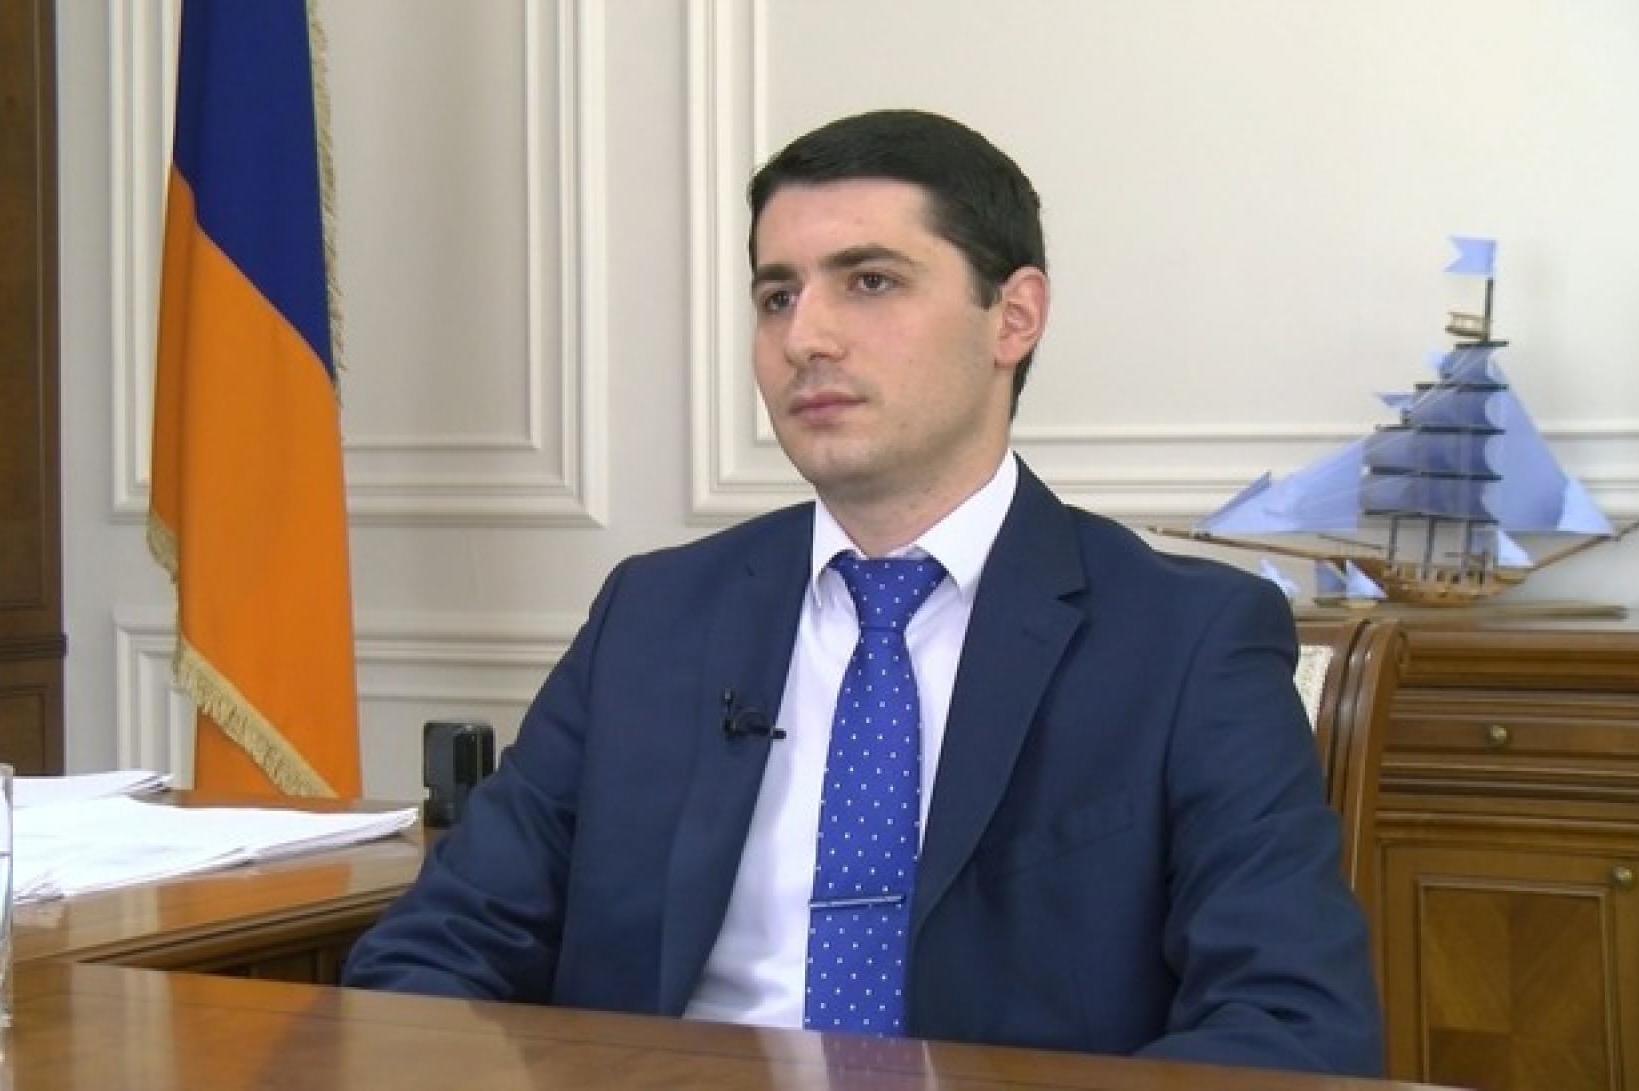 Аргишти Кярамян назначен заместителем председателя СК Армении